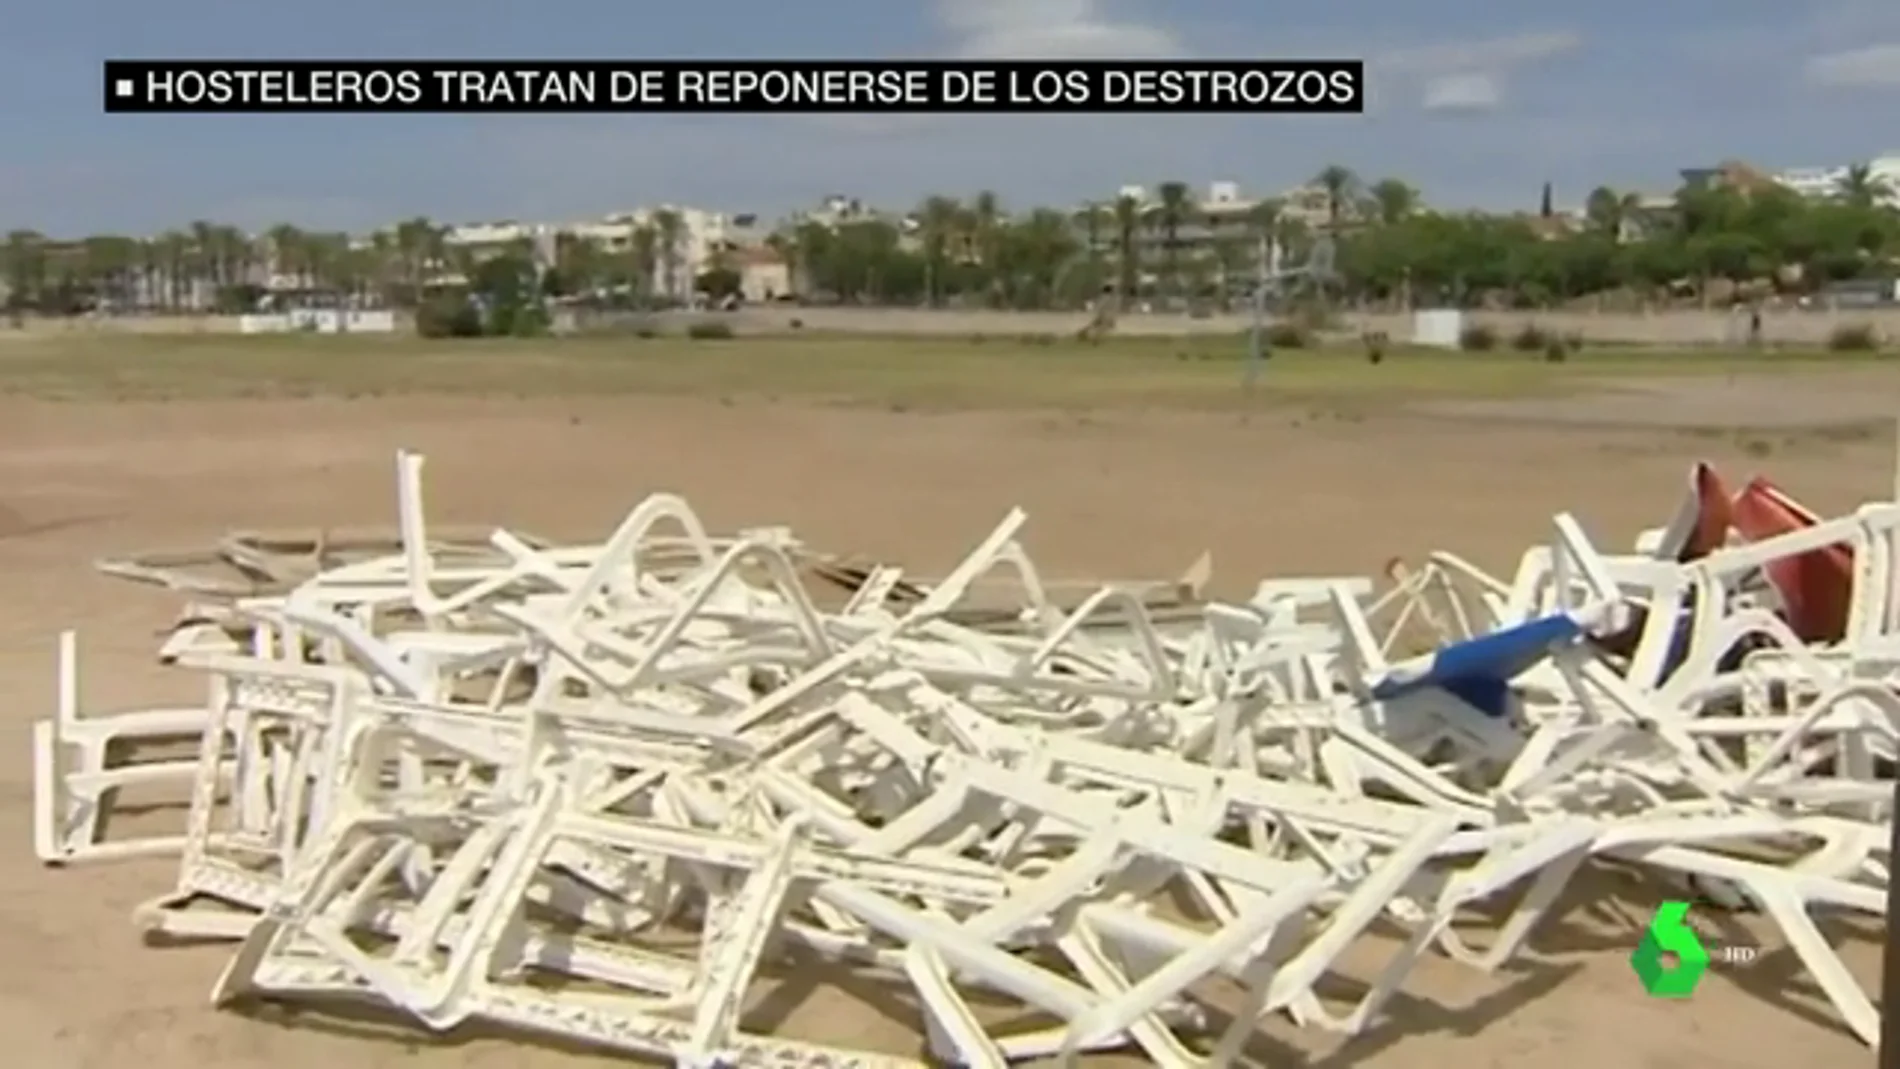 Los hosteleros catalanes hacen balance de los destrozos tras las tormentas